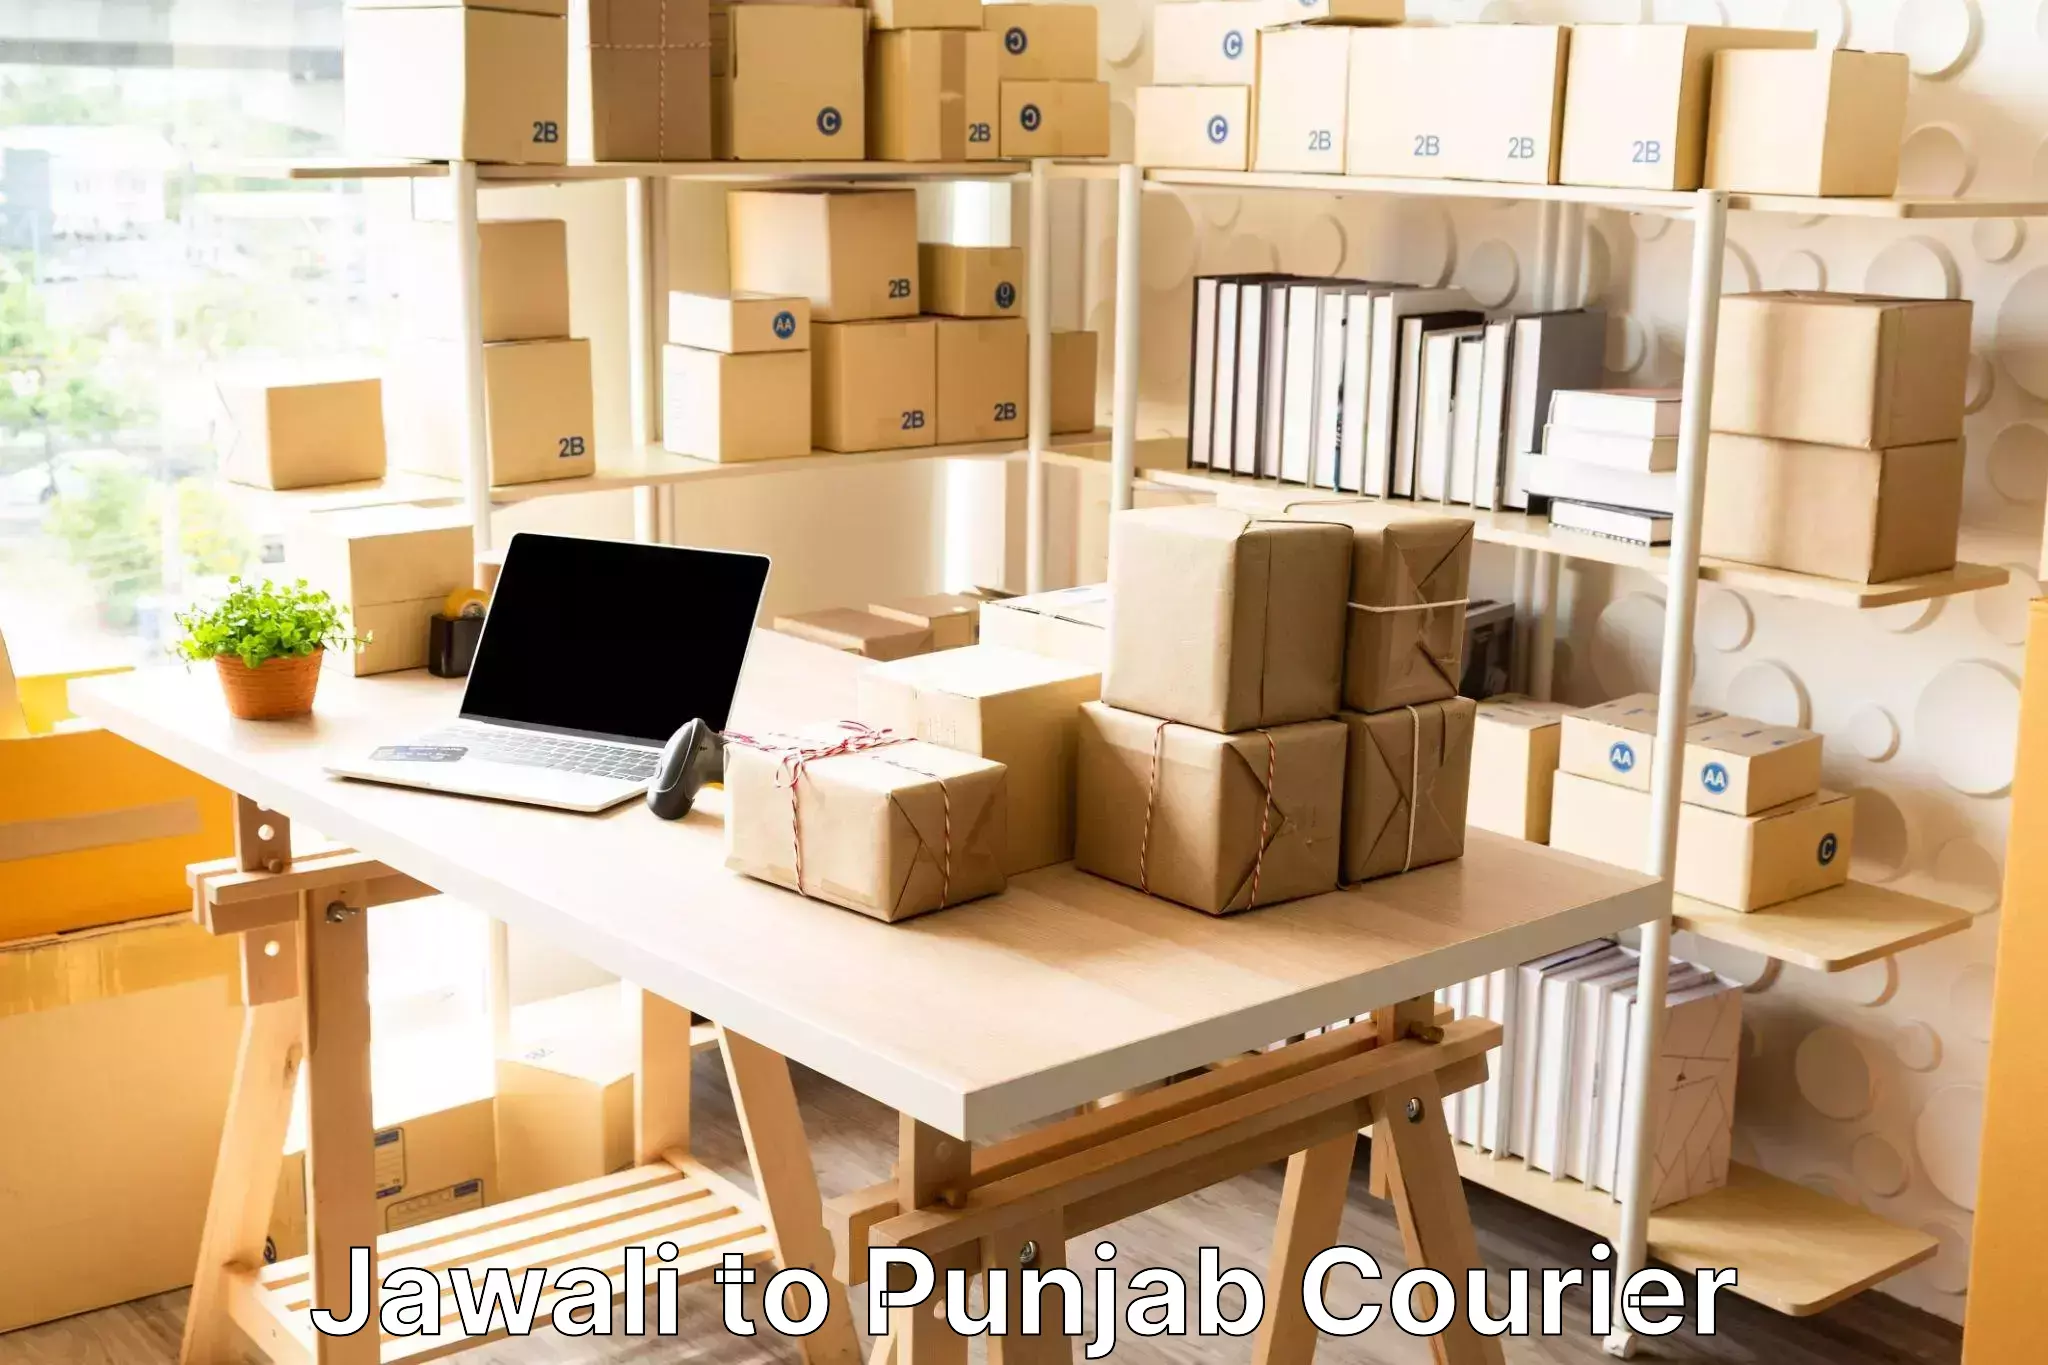 Luggage transport consulting Jawali to Punjab